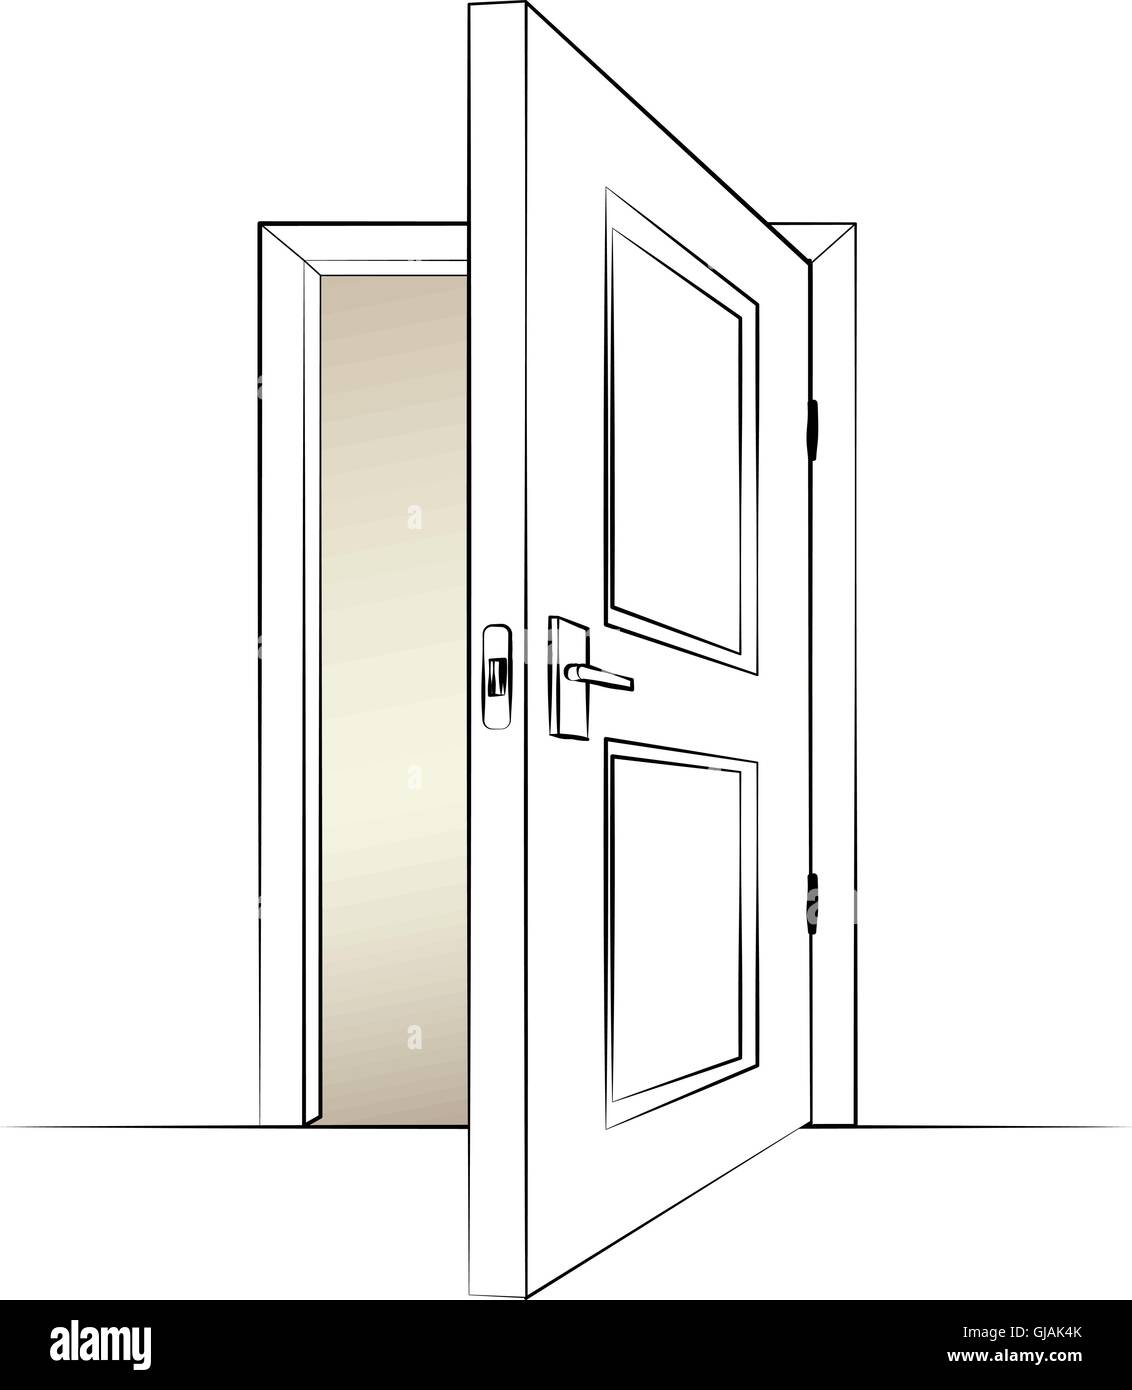 Aprire lo sportello. Illustrazione isolato di una porta. Vettore Illustrazione Vettoriale